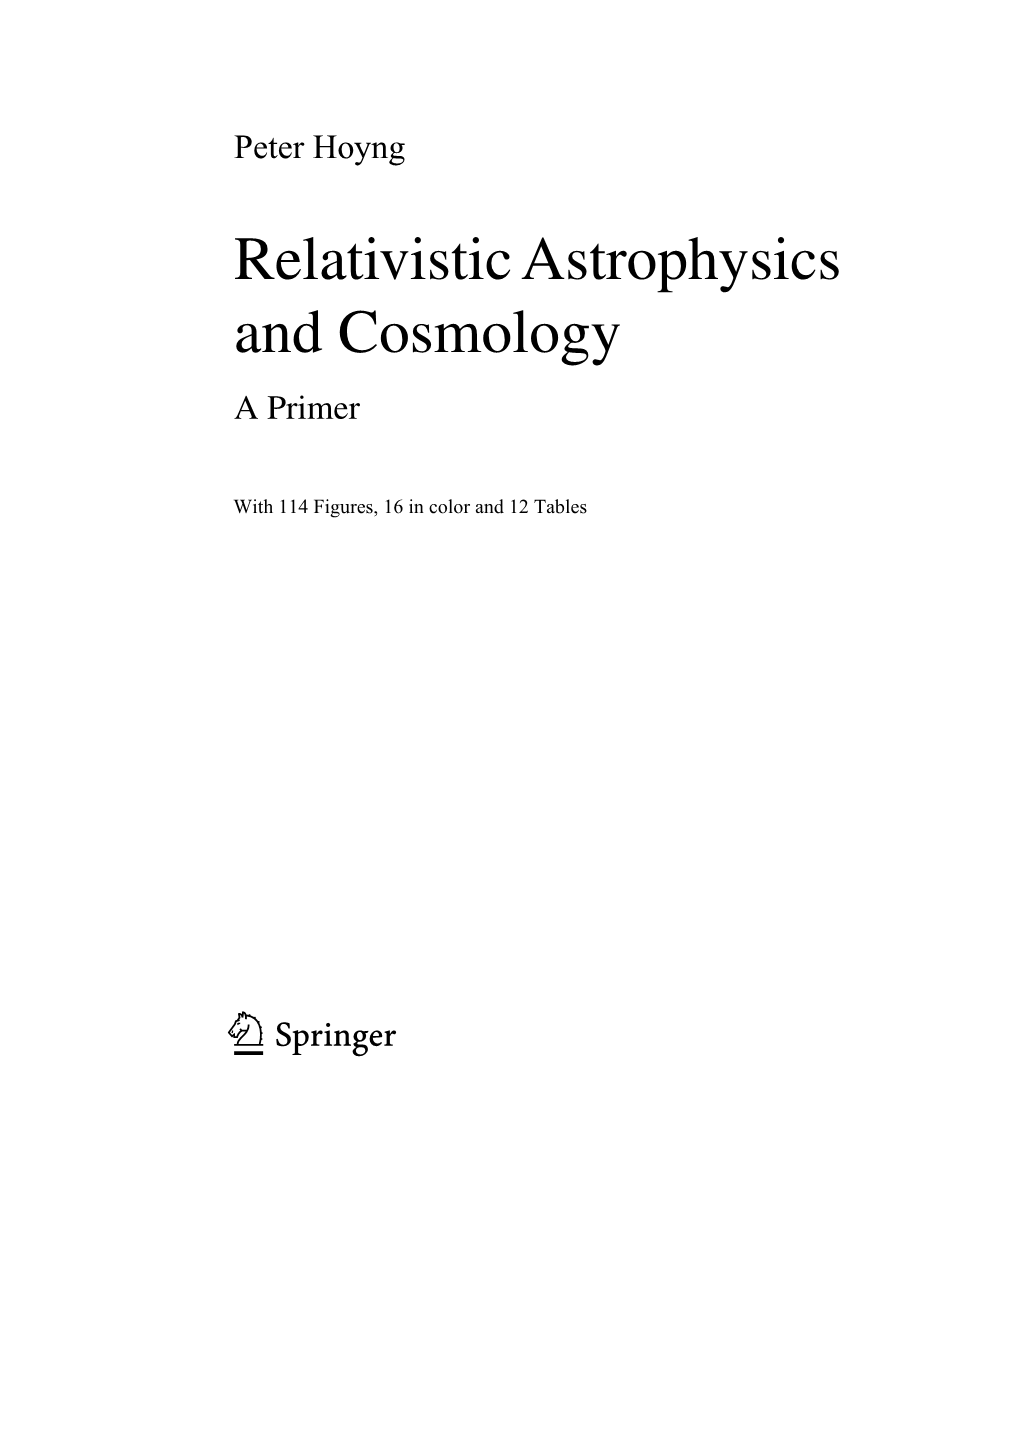 Relativistic Astrophysics and Cosmology a Primer